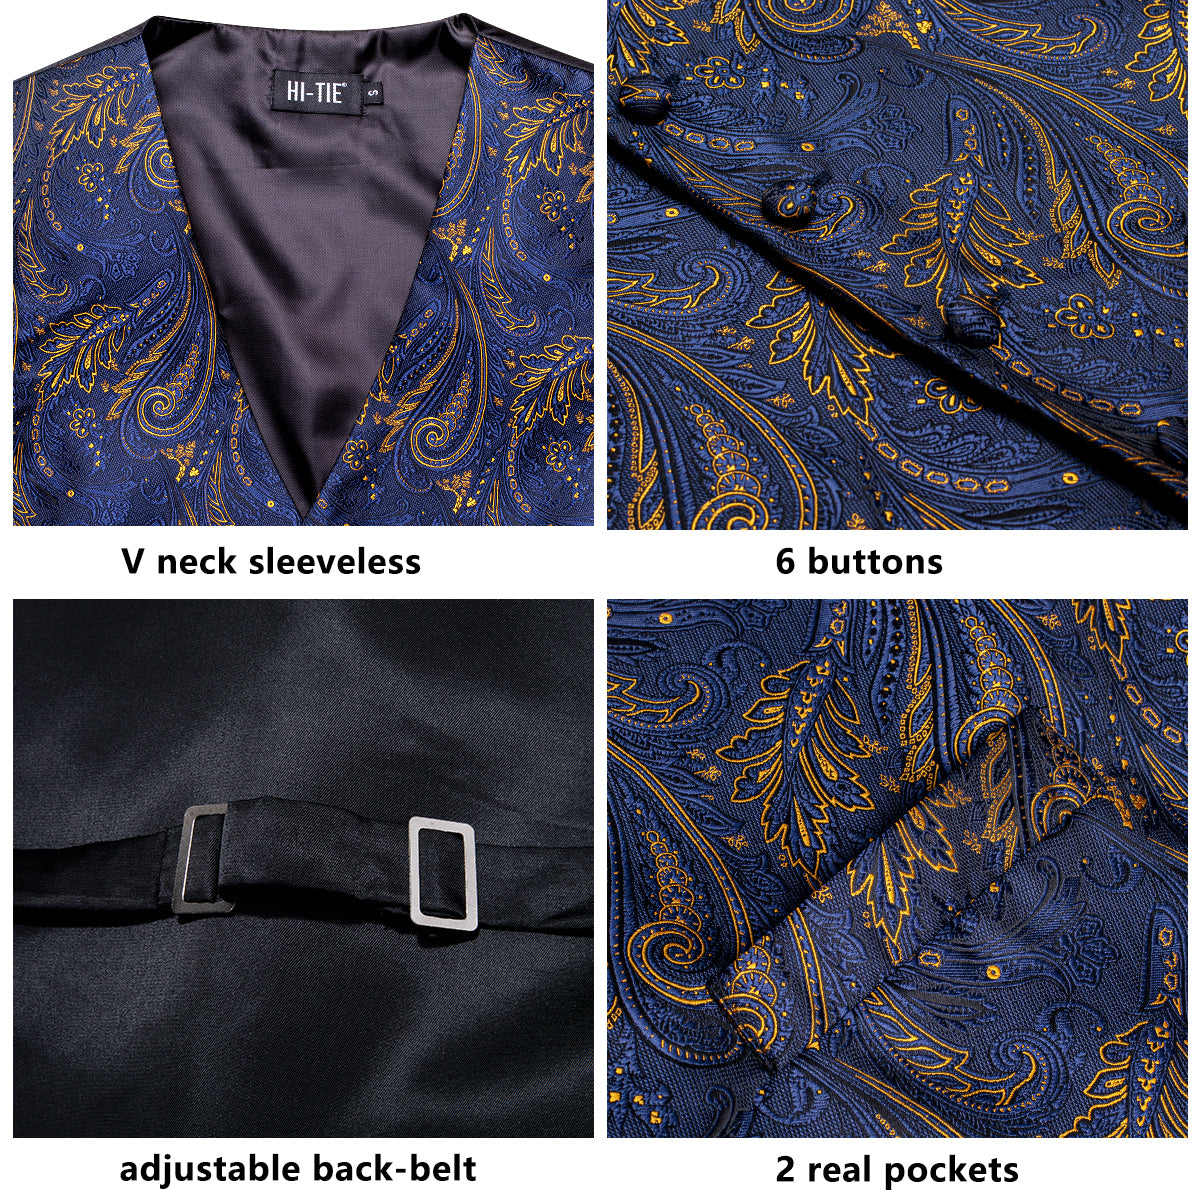 Navy Blue Golden Paisley Silk Men's Vest Hanky Cufflinks Tie Set Waistcoat Suit Set